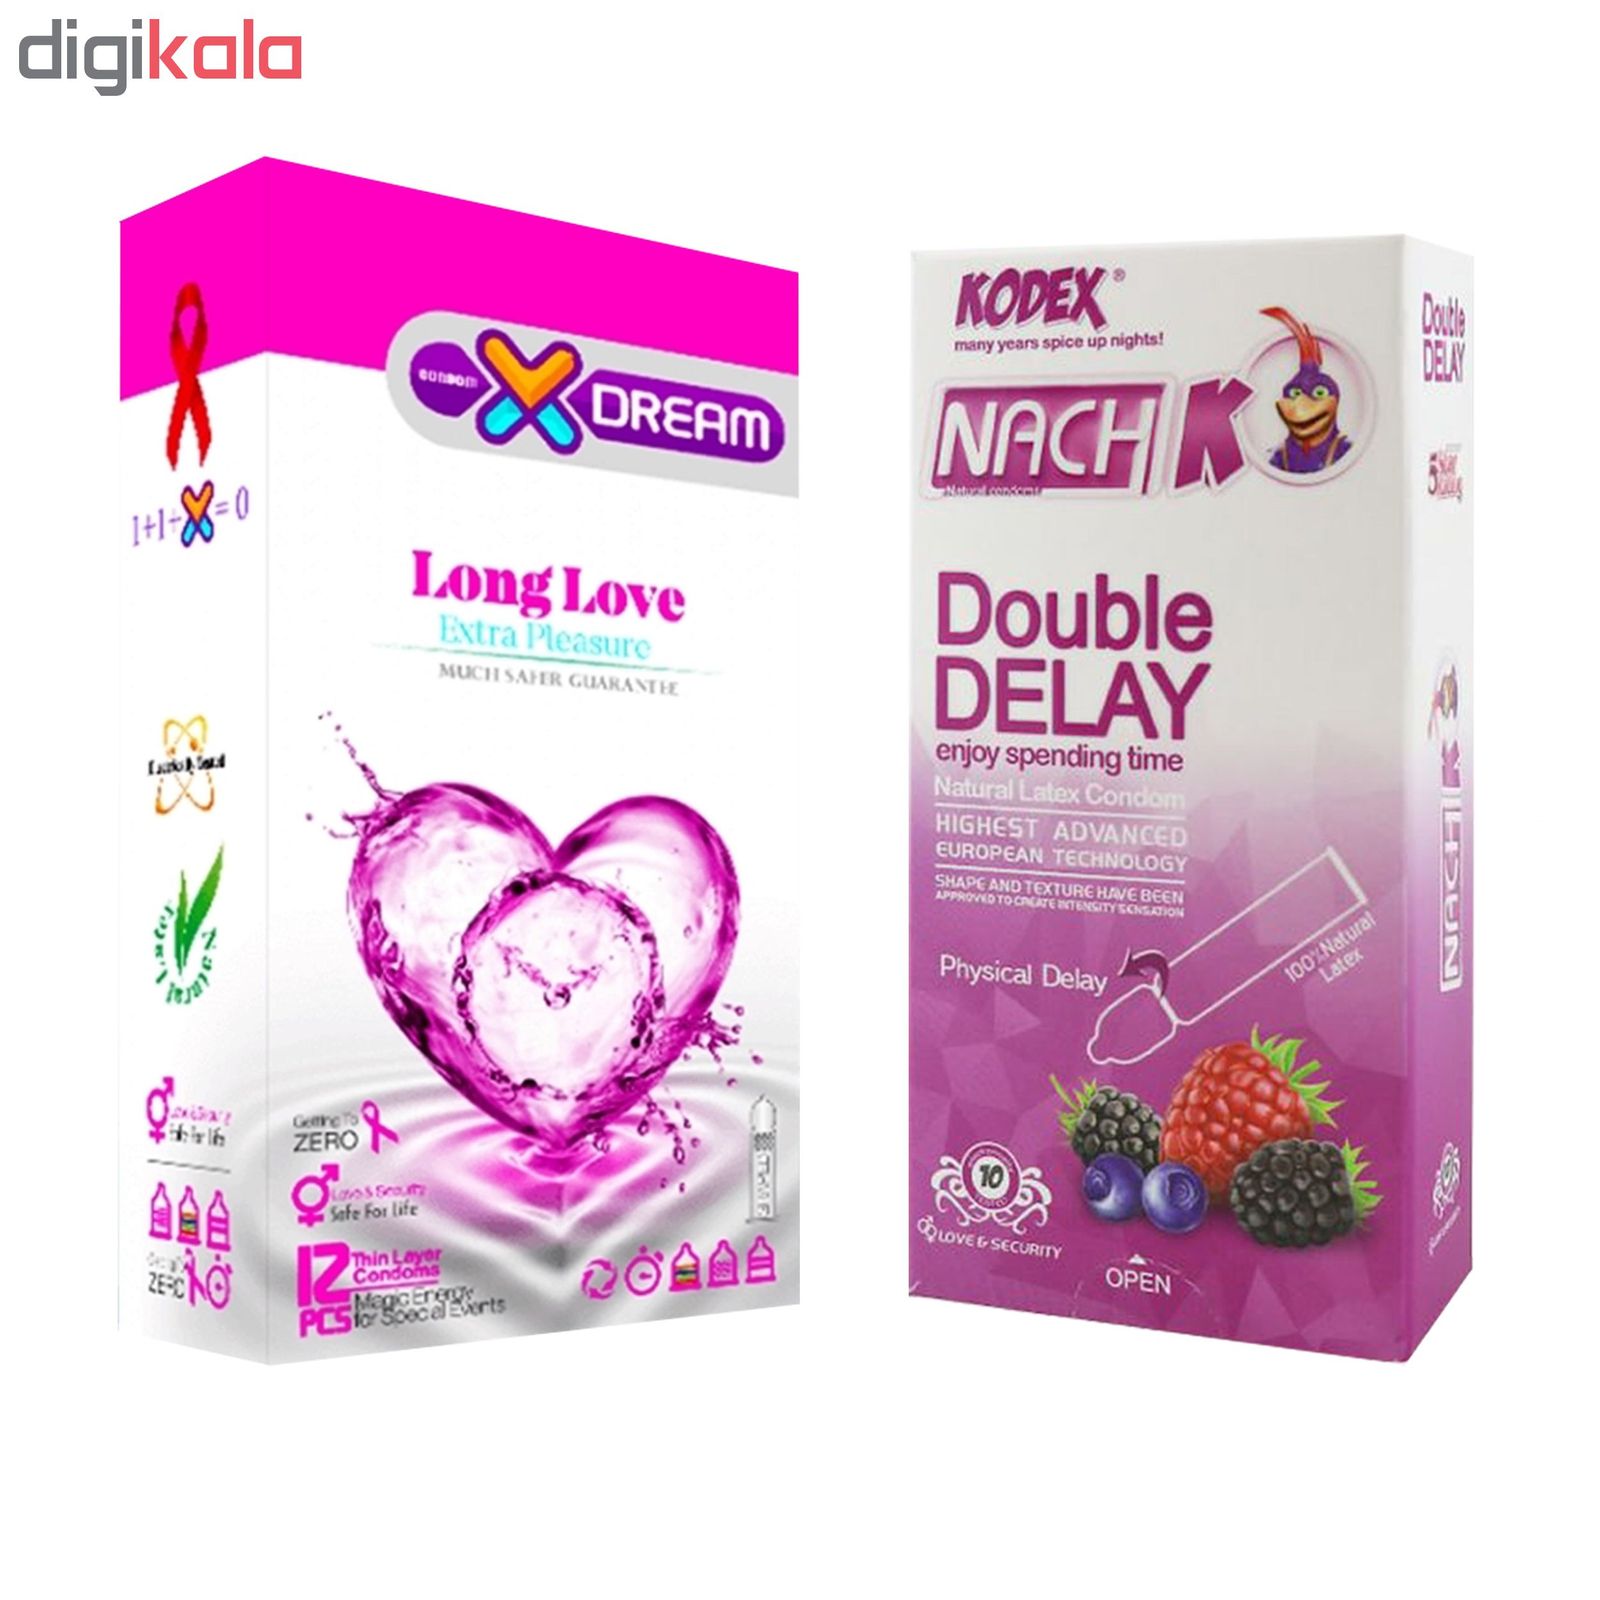 کاندوم ایکس دریم مدل Long Love بسته 12 عددی به همراه کاندوم تاخیری کدکس مدل Double Delay بسته 10 عددی -  - 2